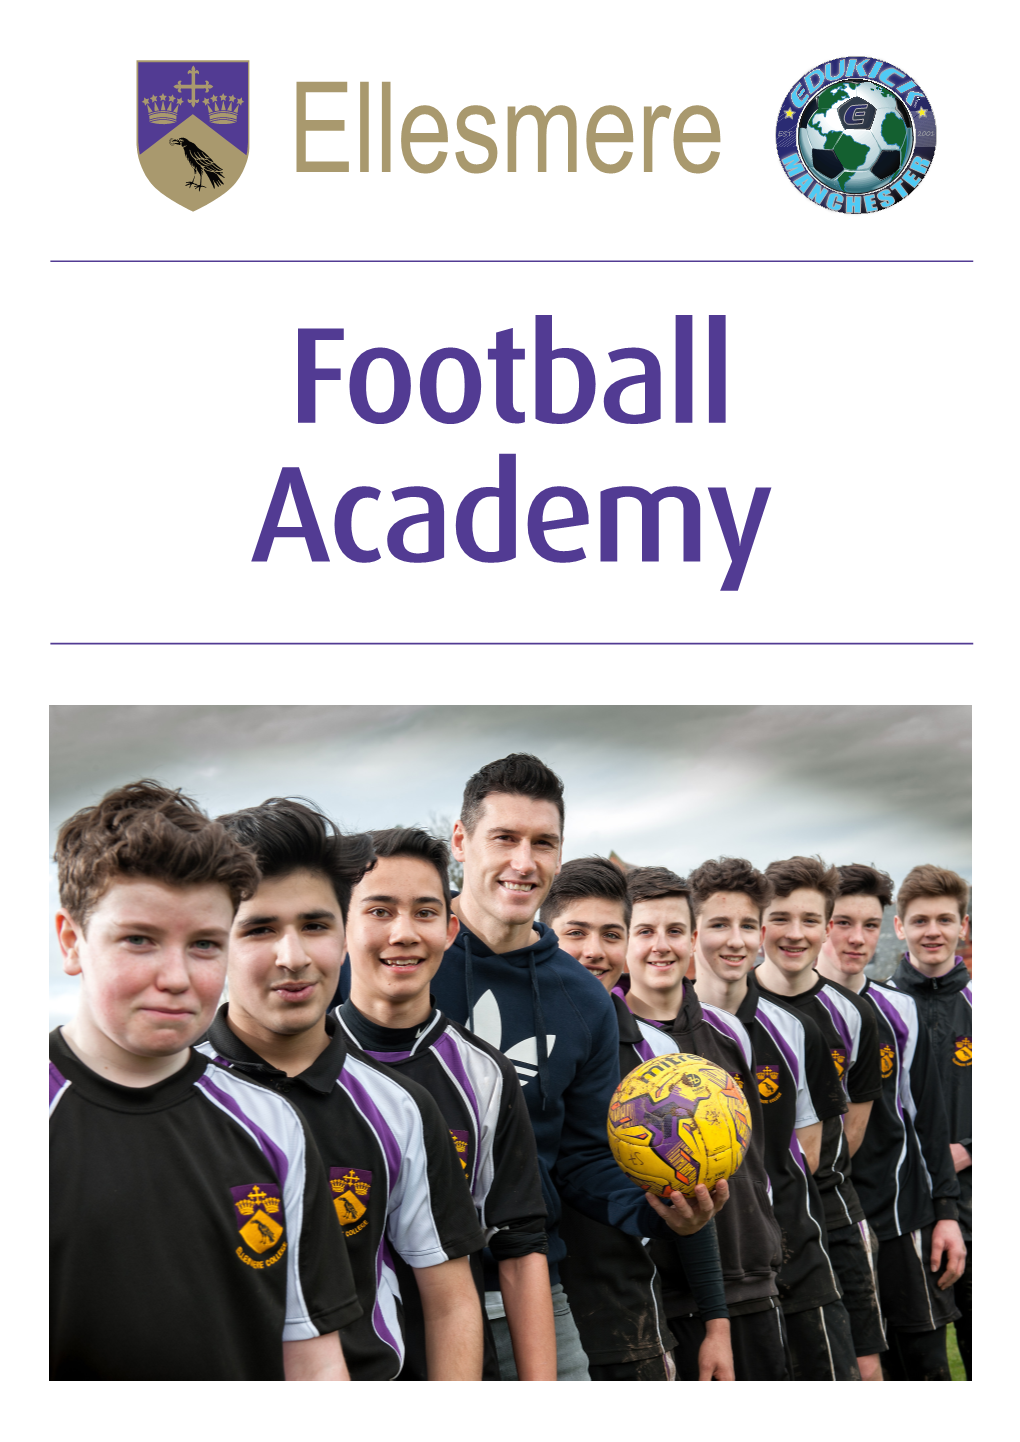 Football Academy 2 | Ellesmere Football Academy